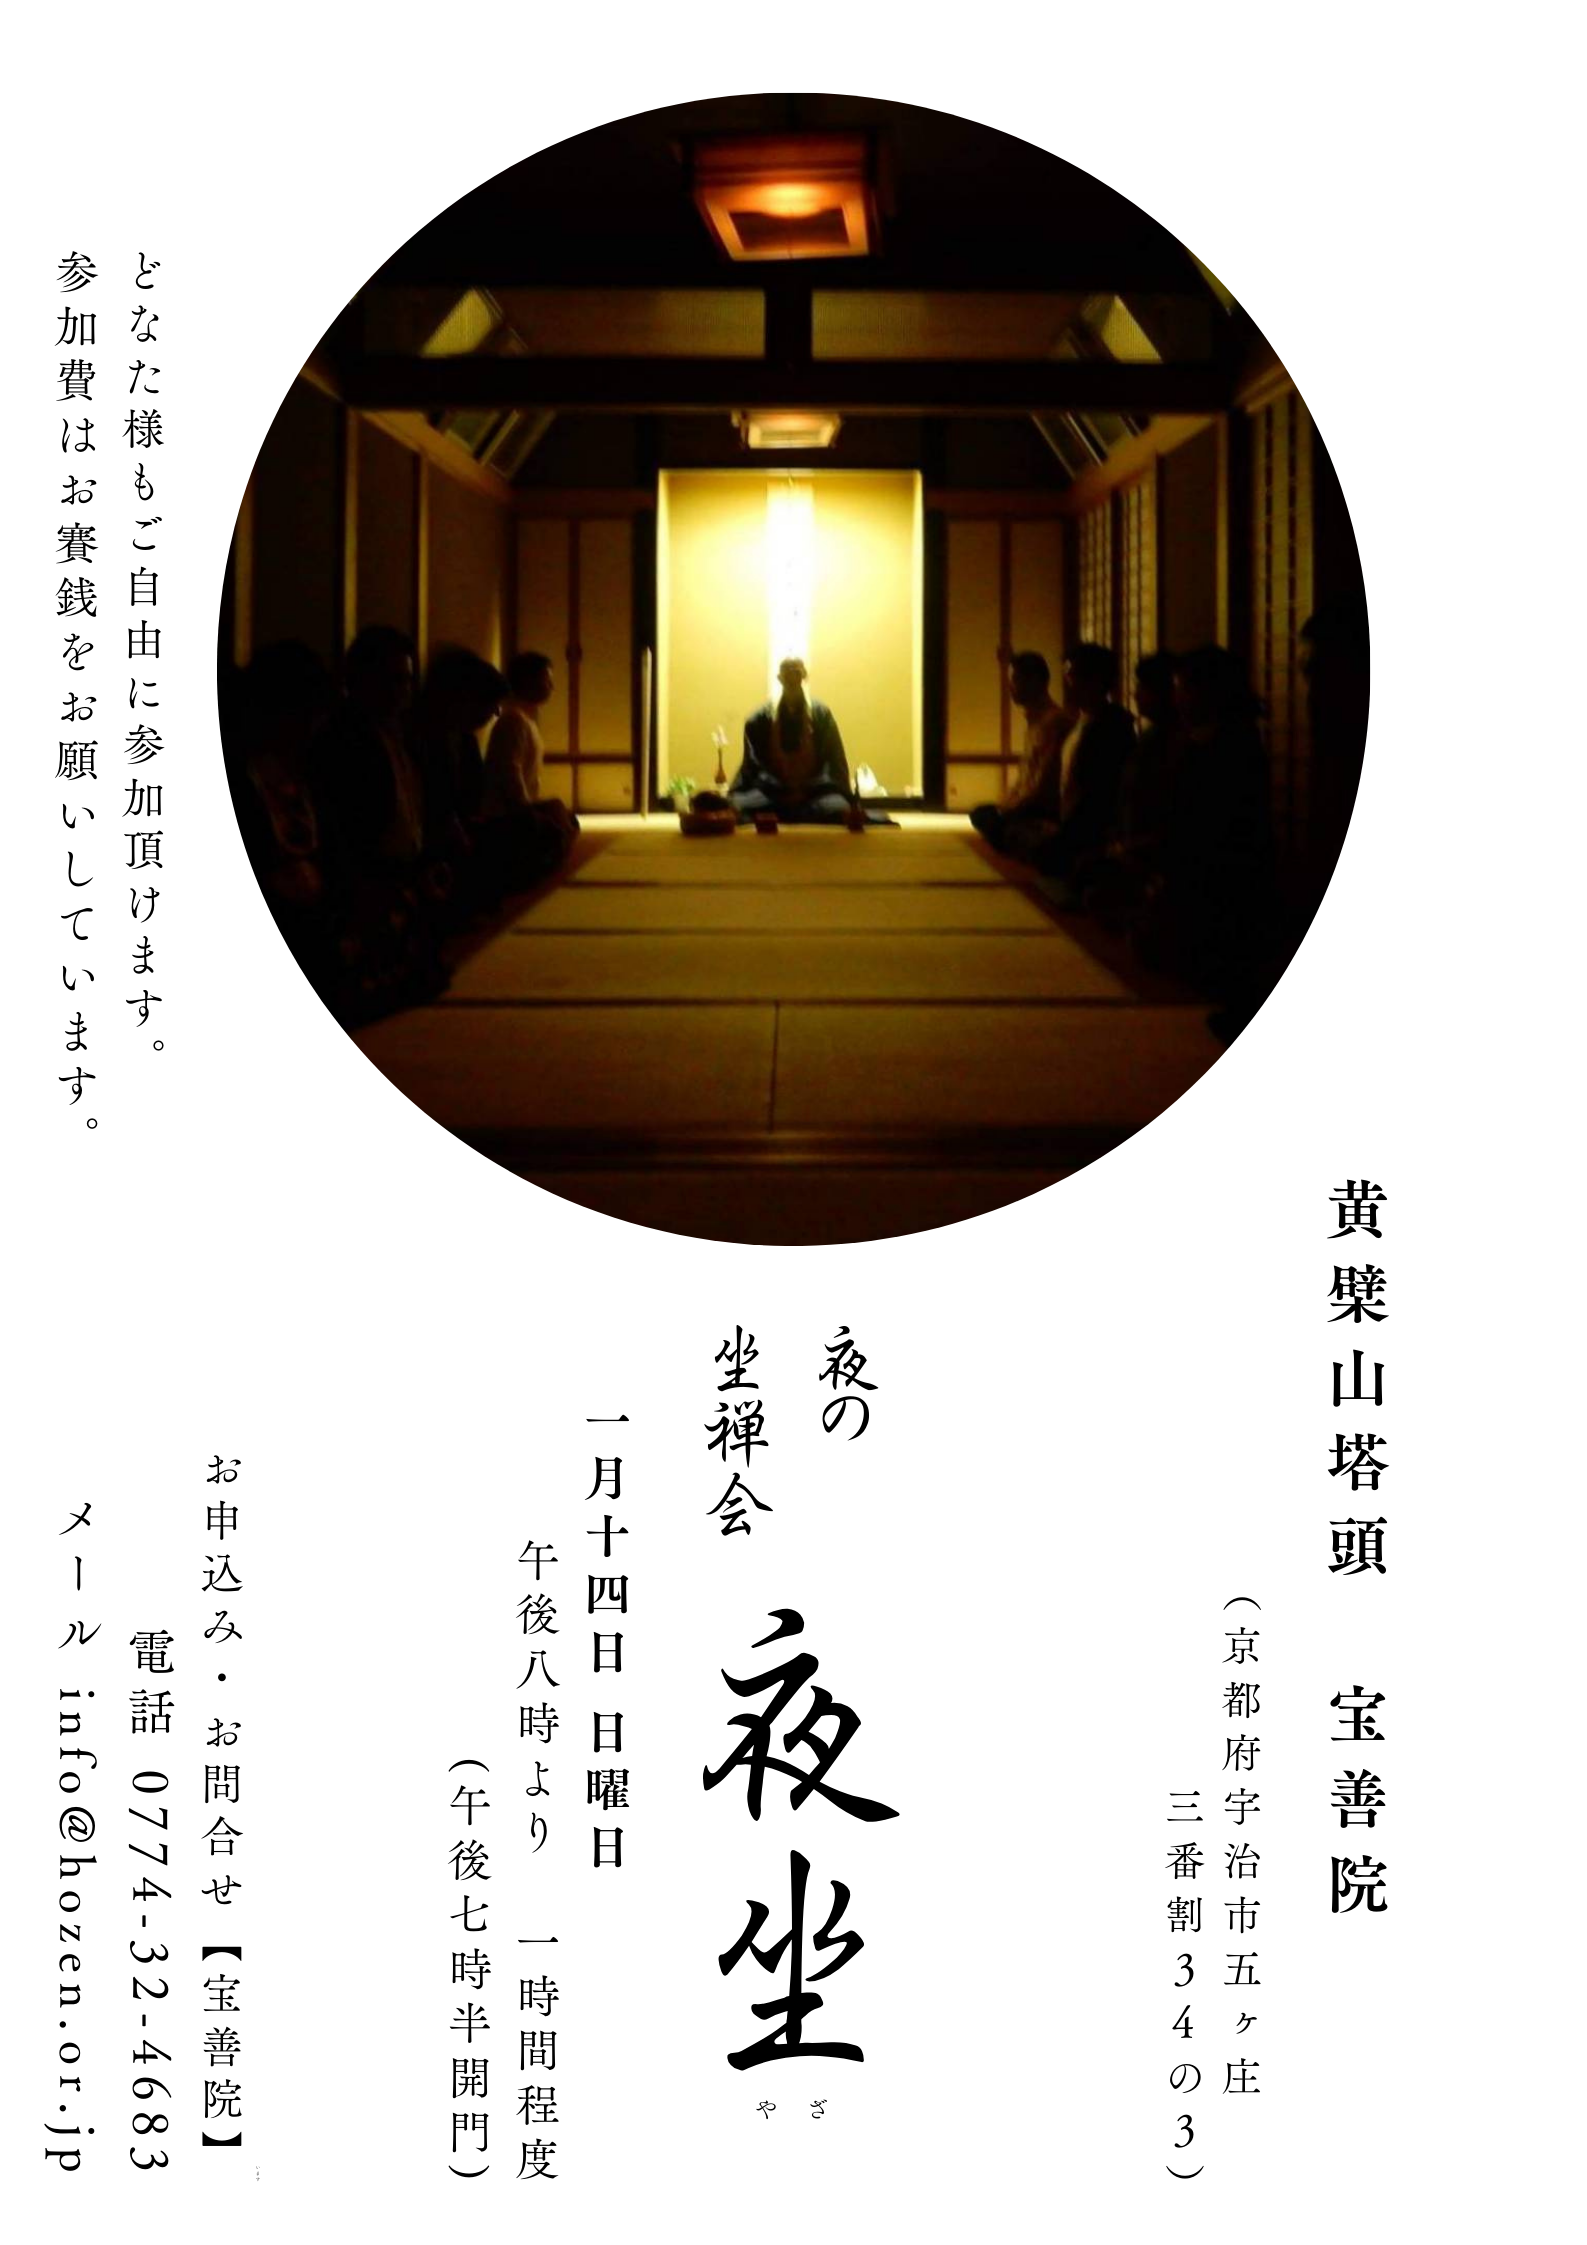 黄檗山宝善院での夜の坐禅会のチラシです。